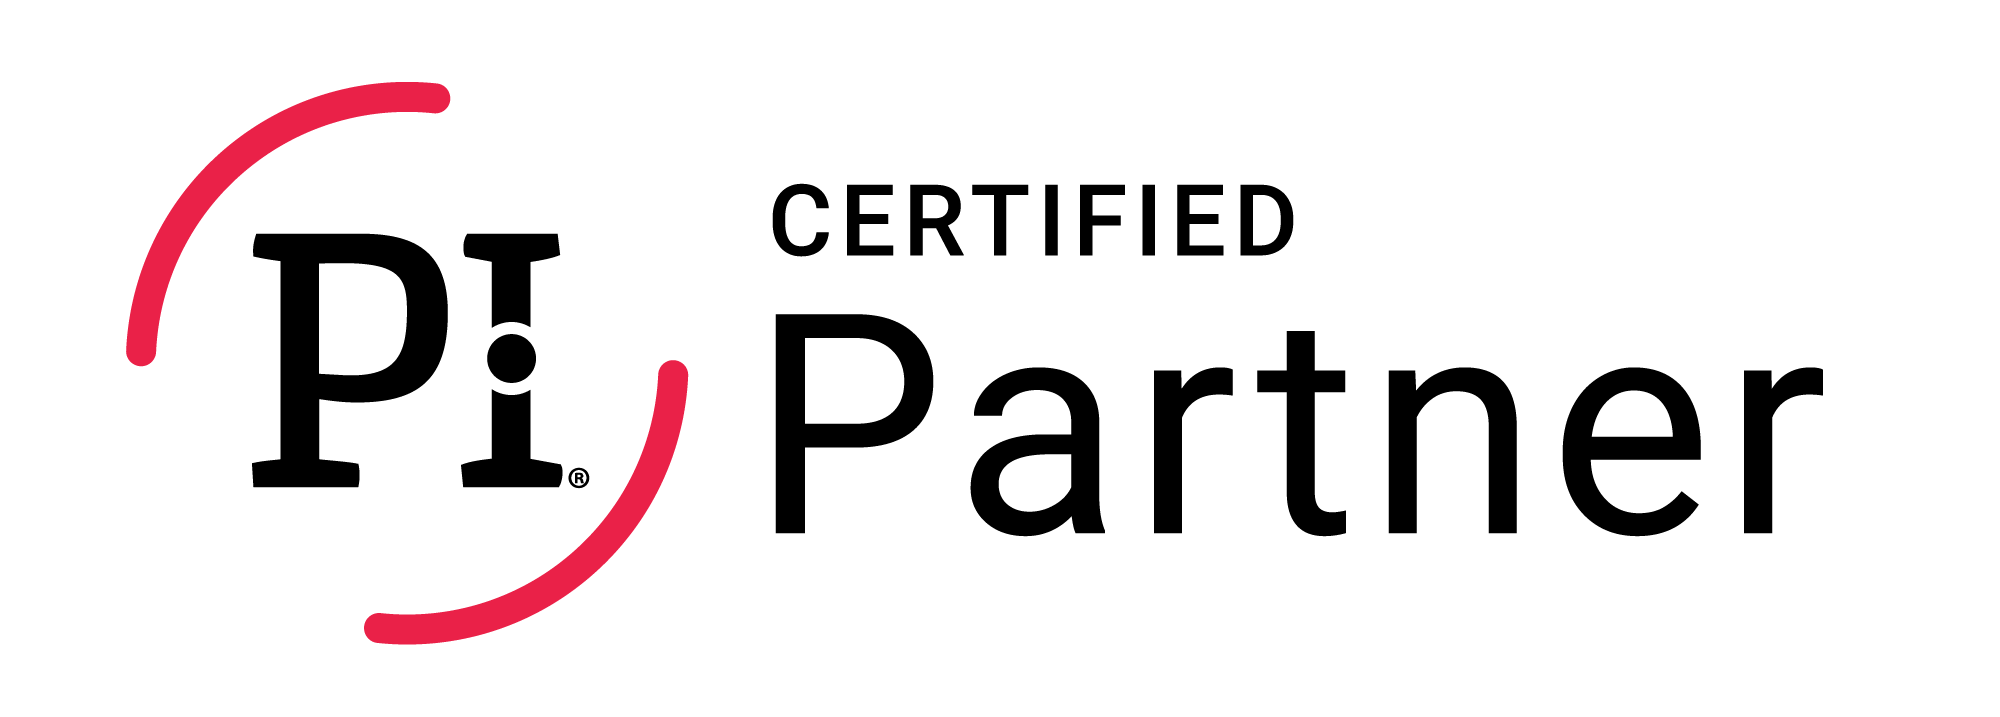 Certified Partner Badge - Large